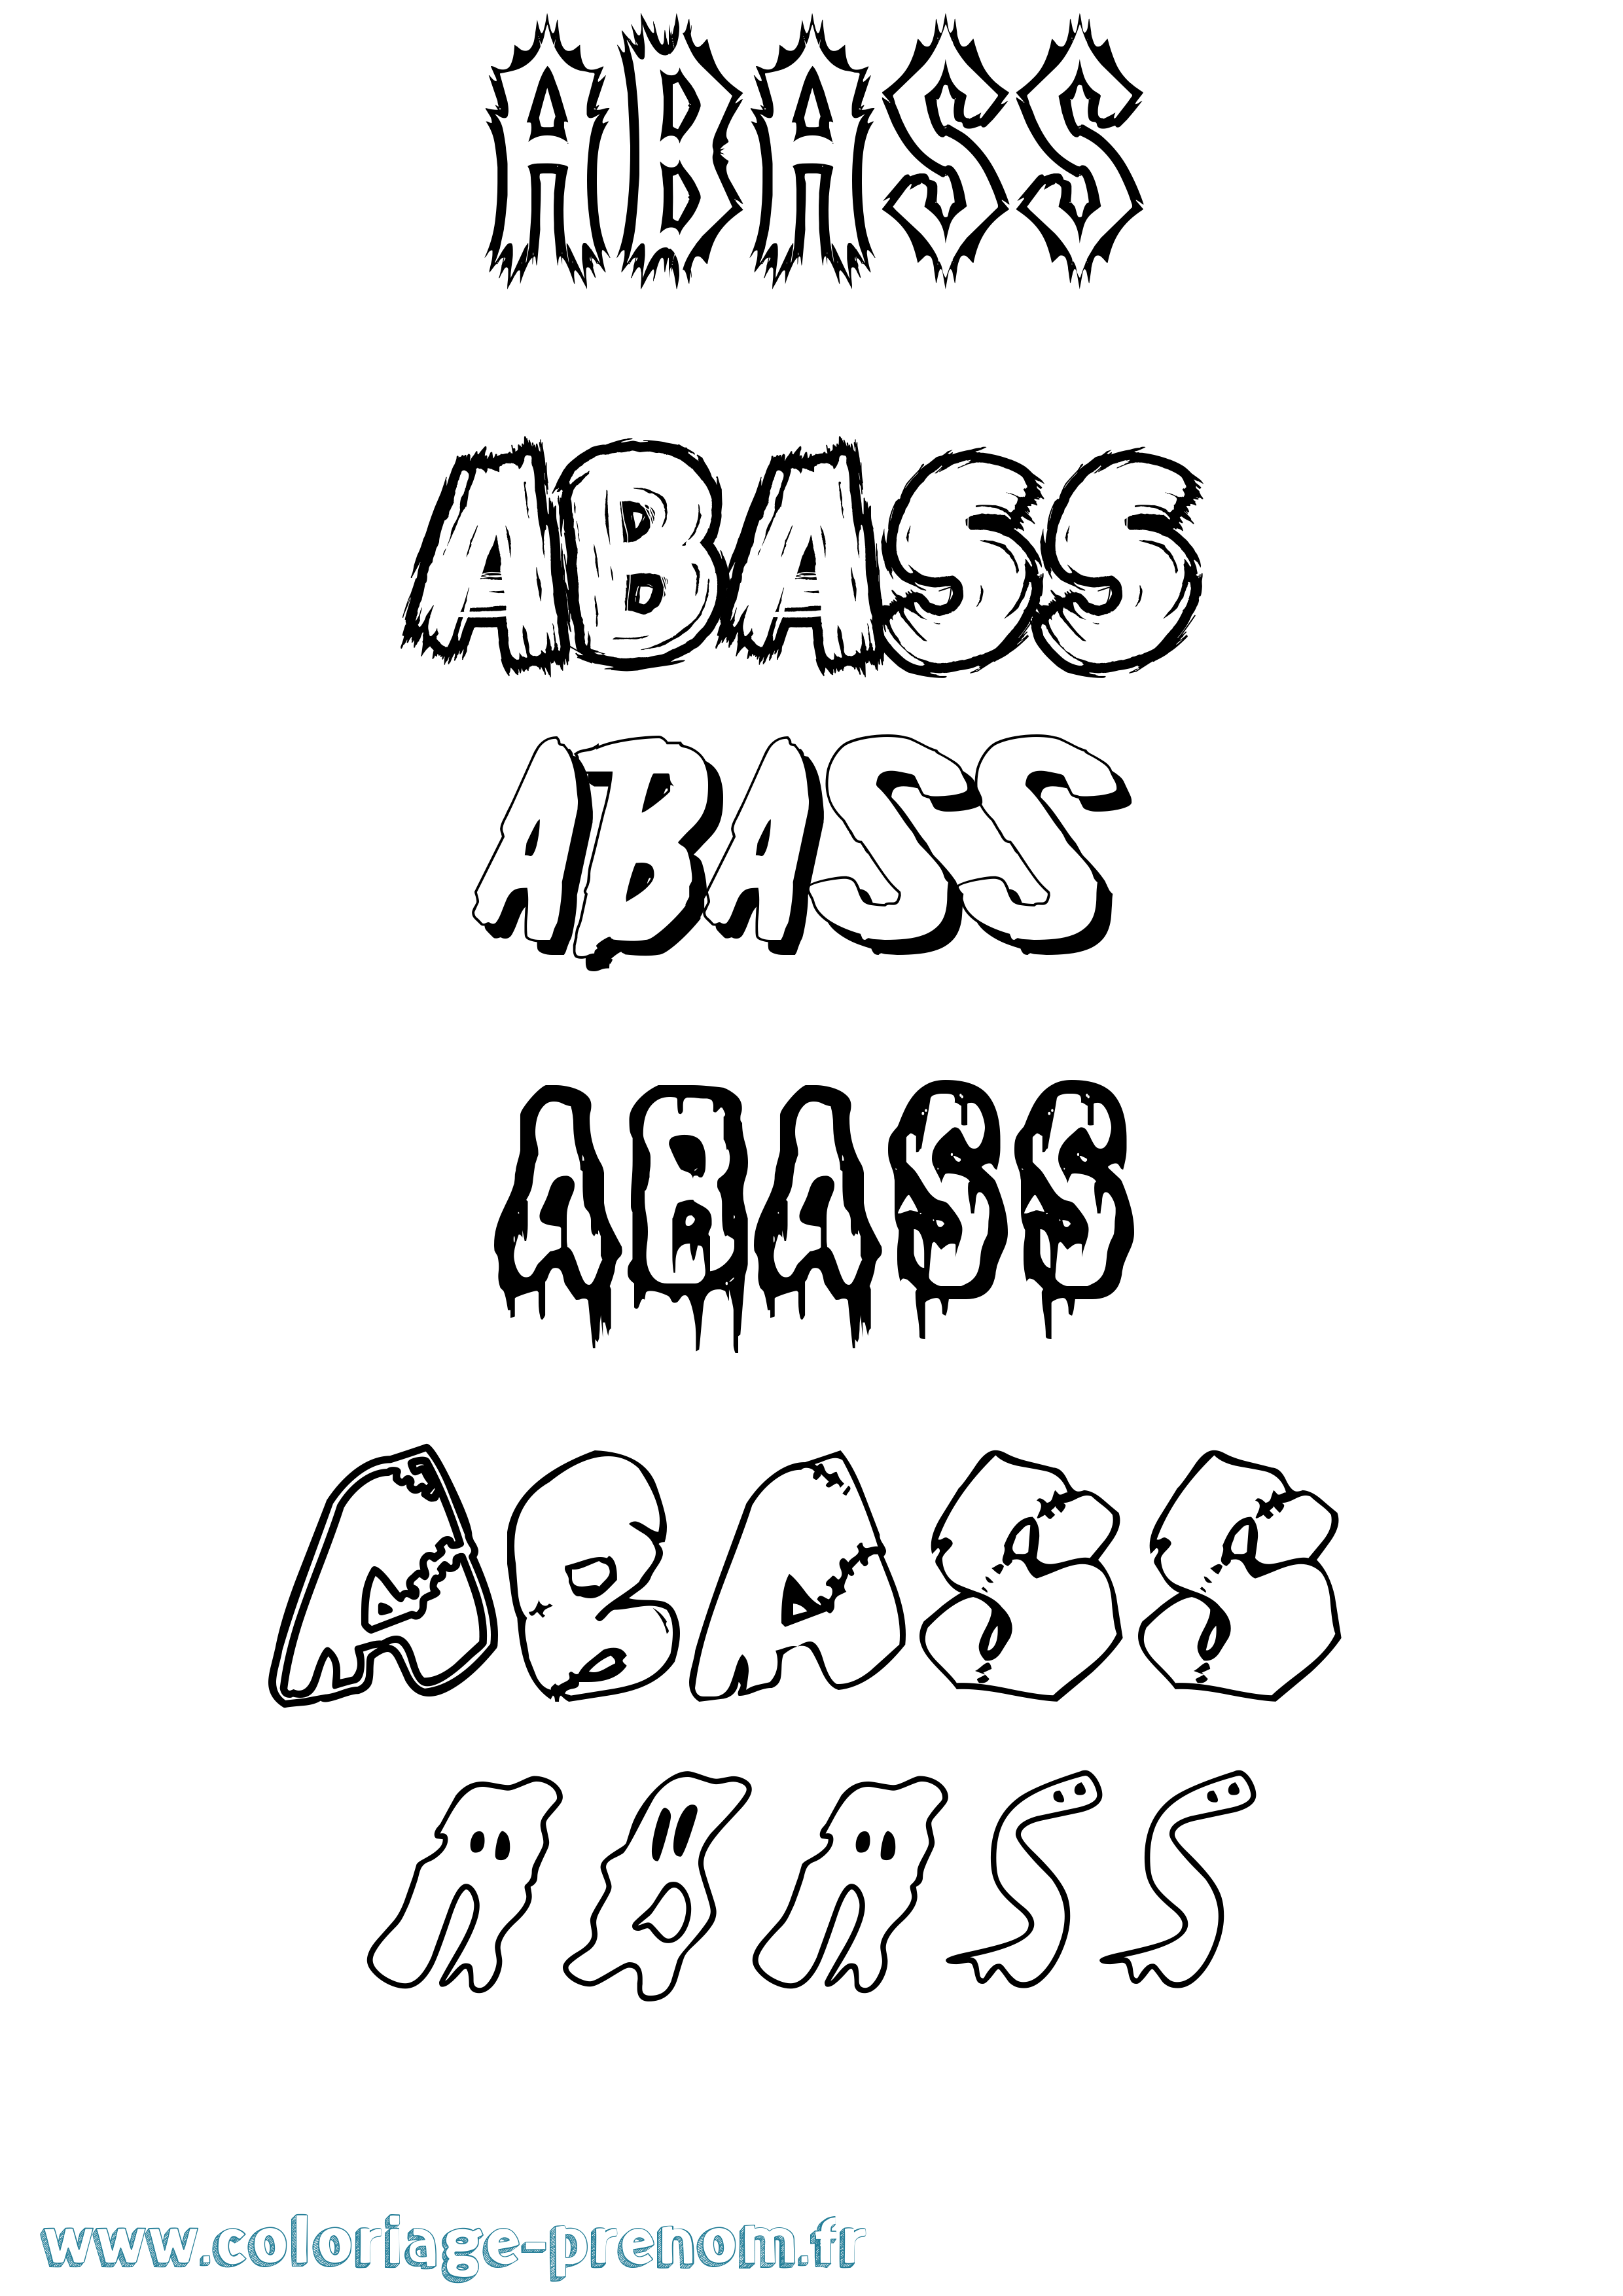 Coloriage prénom Abass Frisson